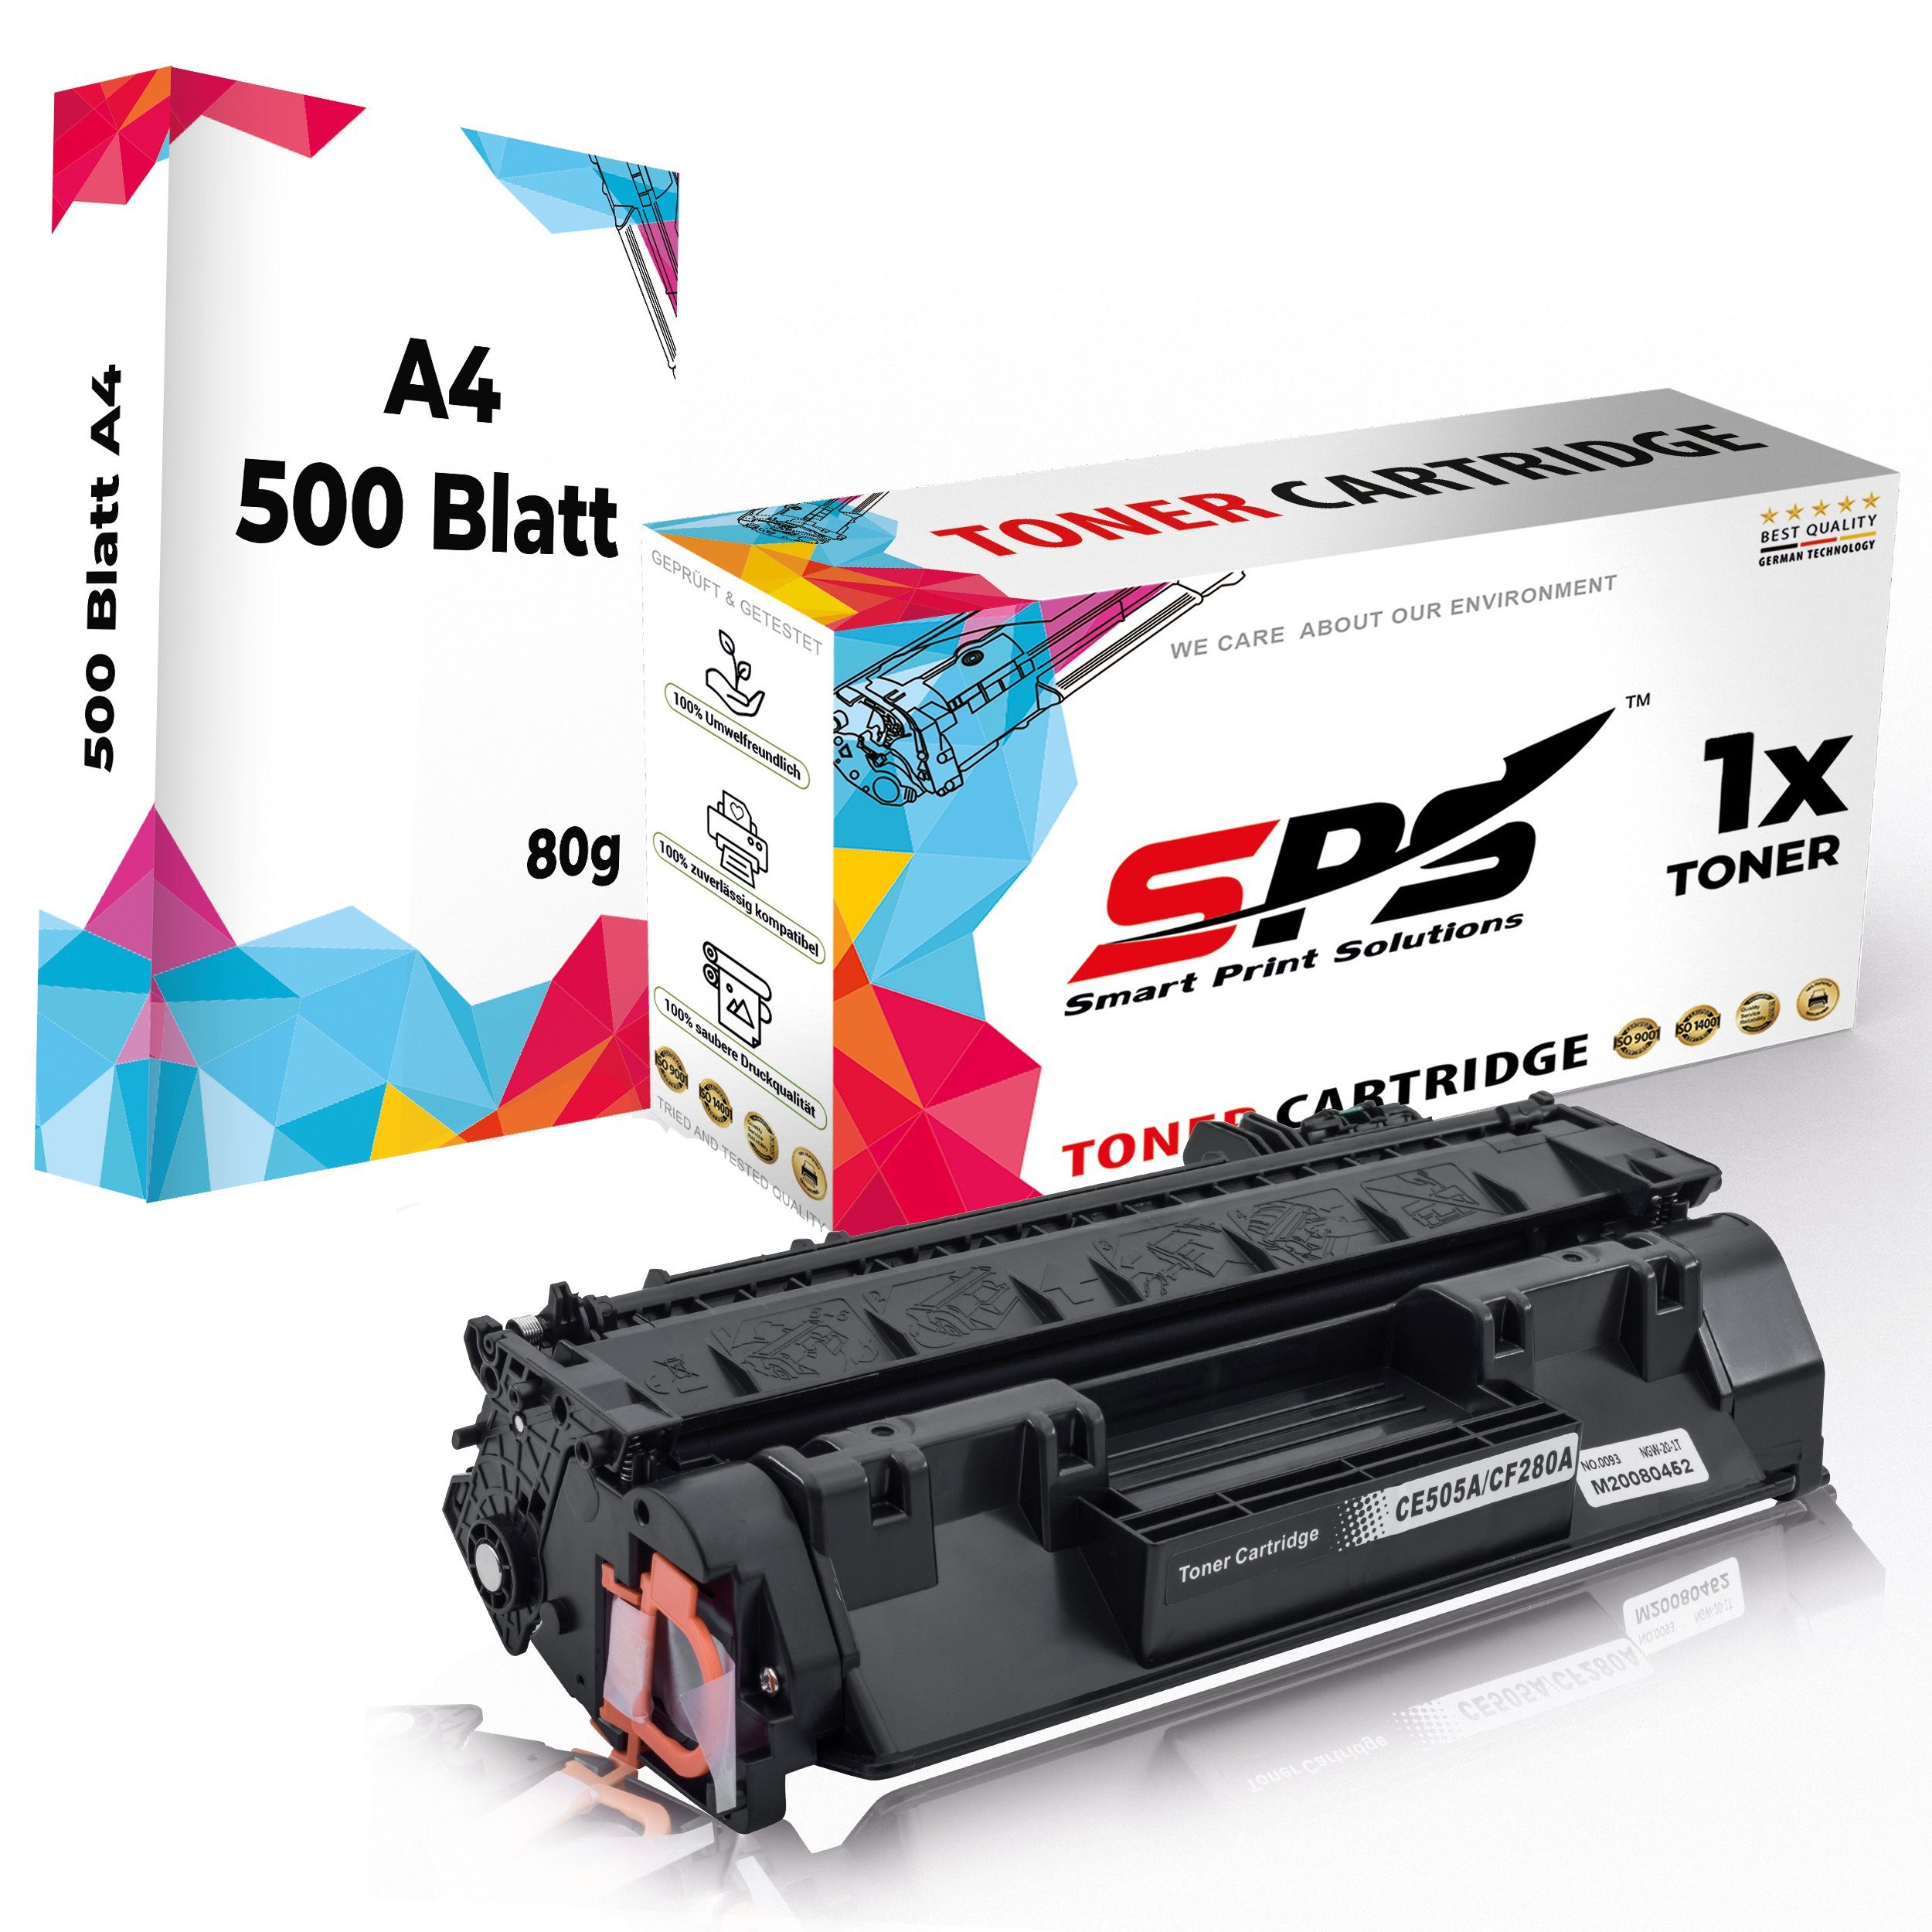 SPS Tonerkartusche Kompatibel für HP Laserjet Pro 400 M401 80A CF280A, (1er Pack + A4 Papier, 1x Toner (1x Schwarz)